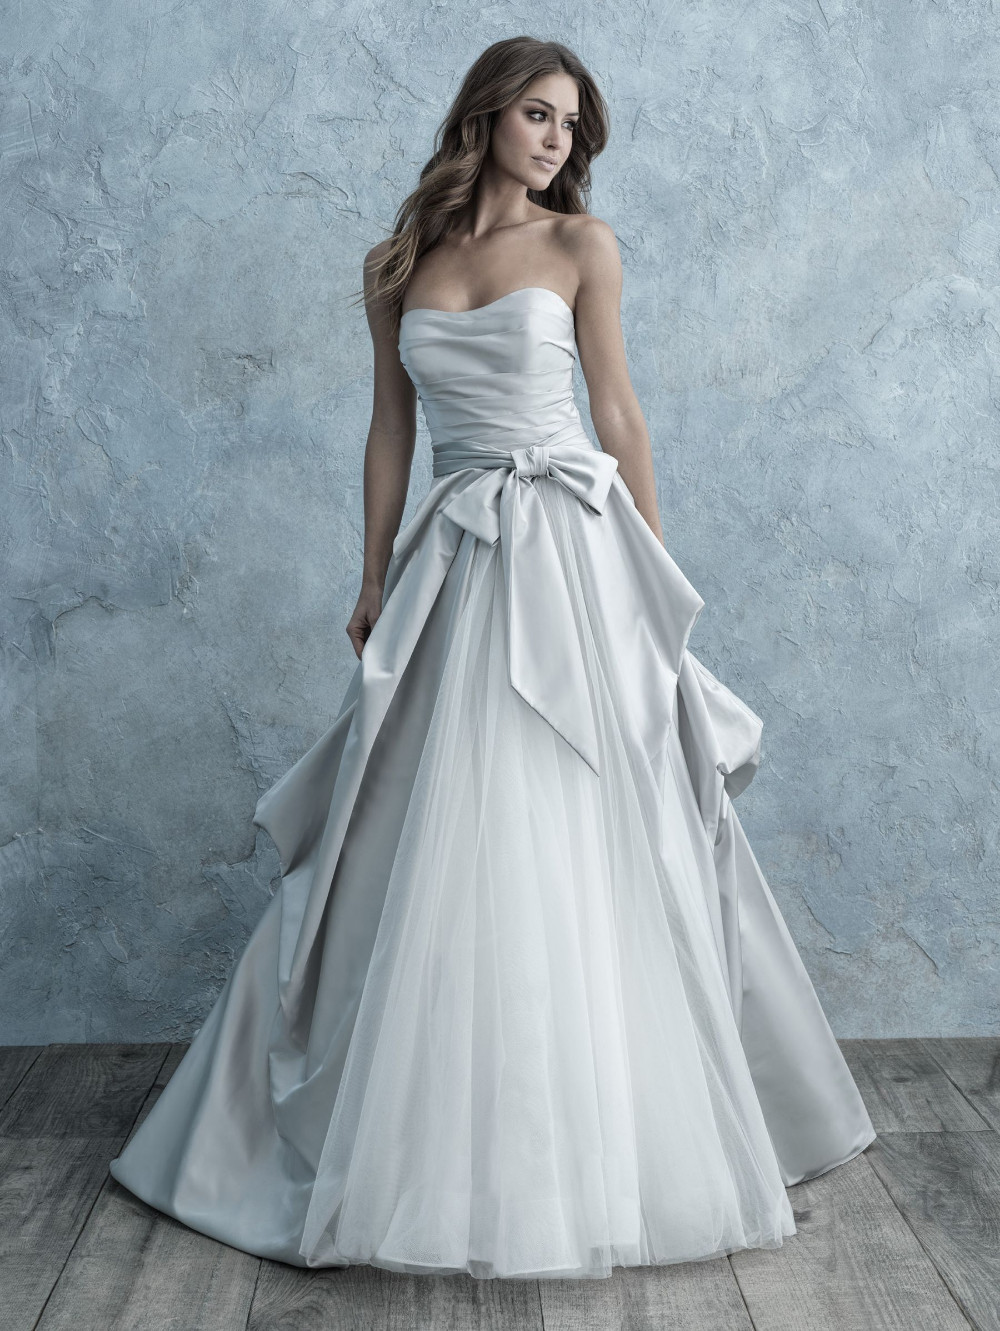 Vows Wedding Dress Store
 Allure Bridals 9665 Vows Bridal